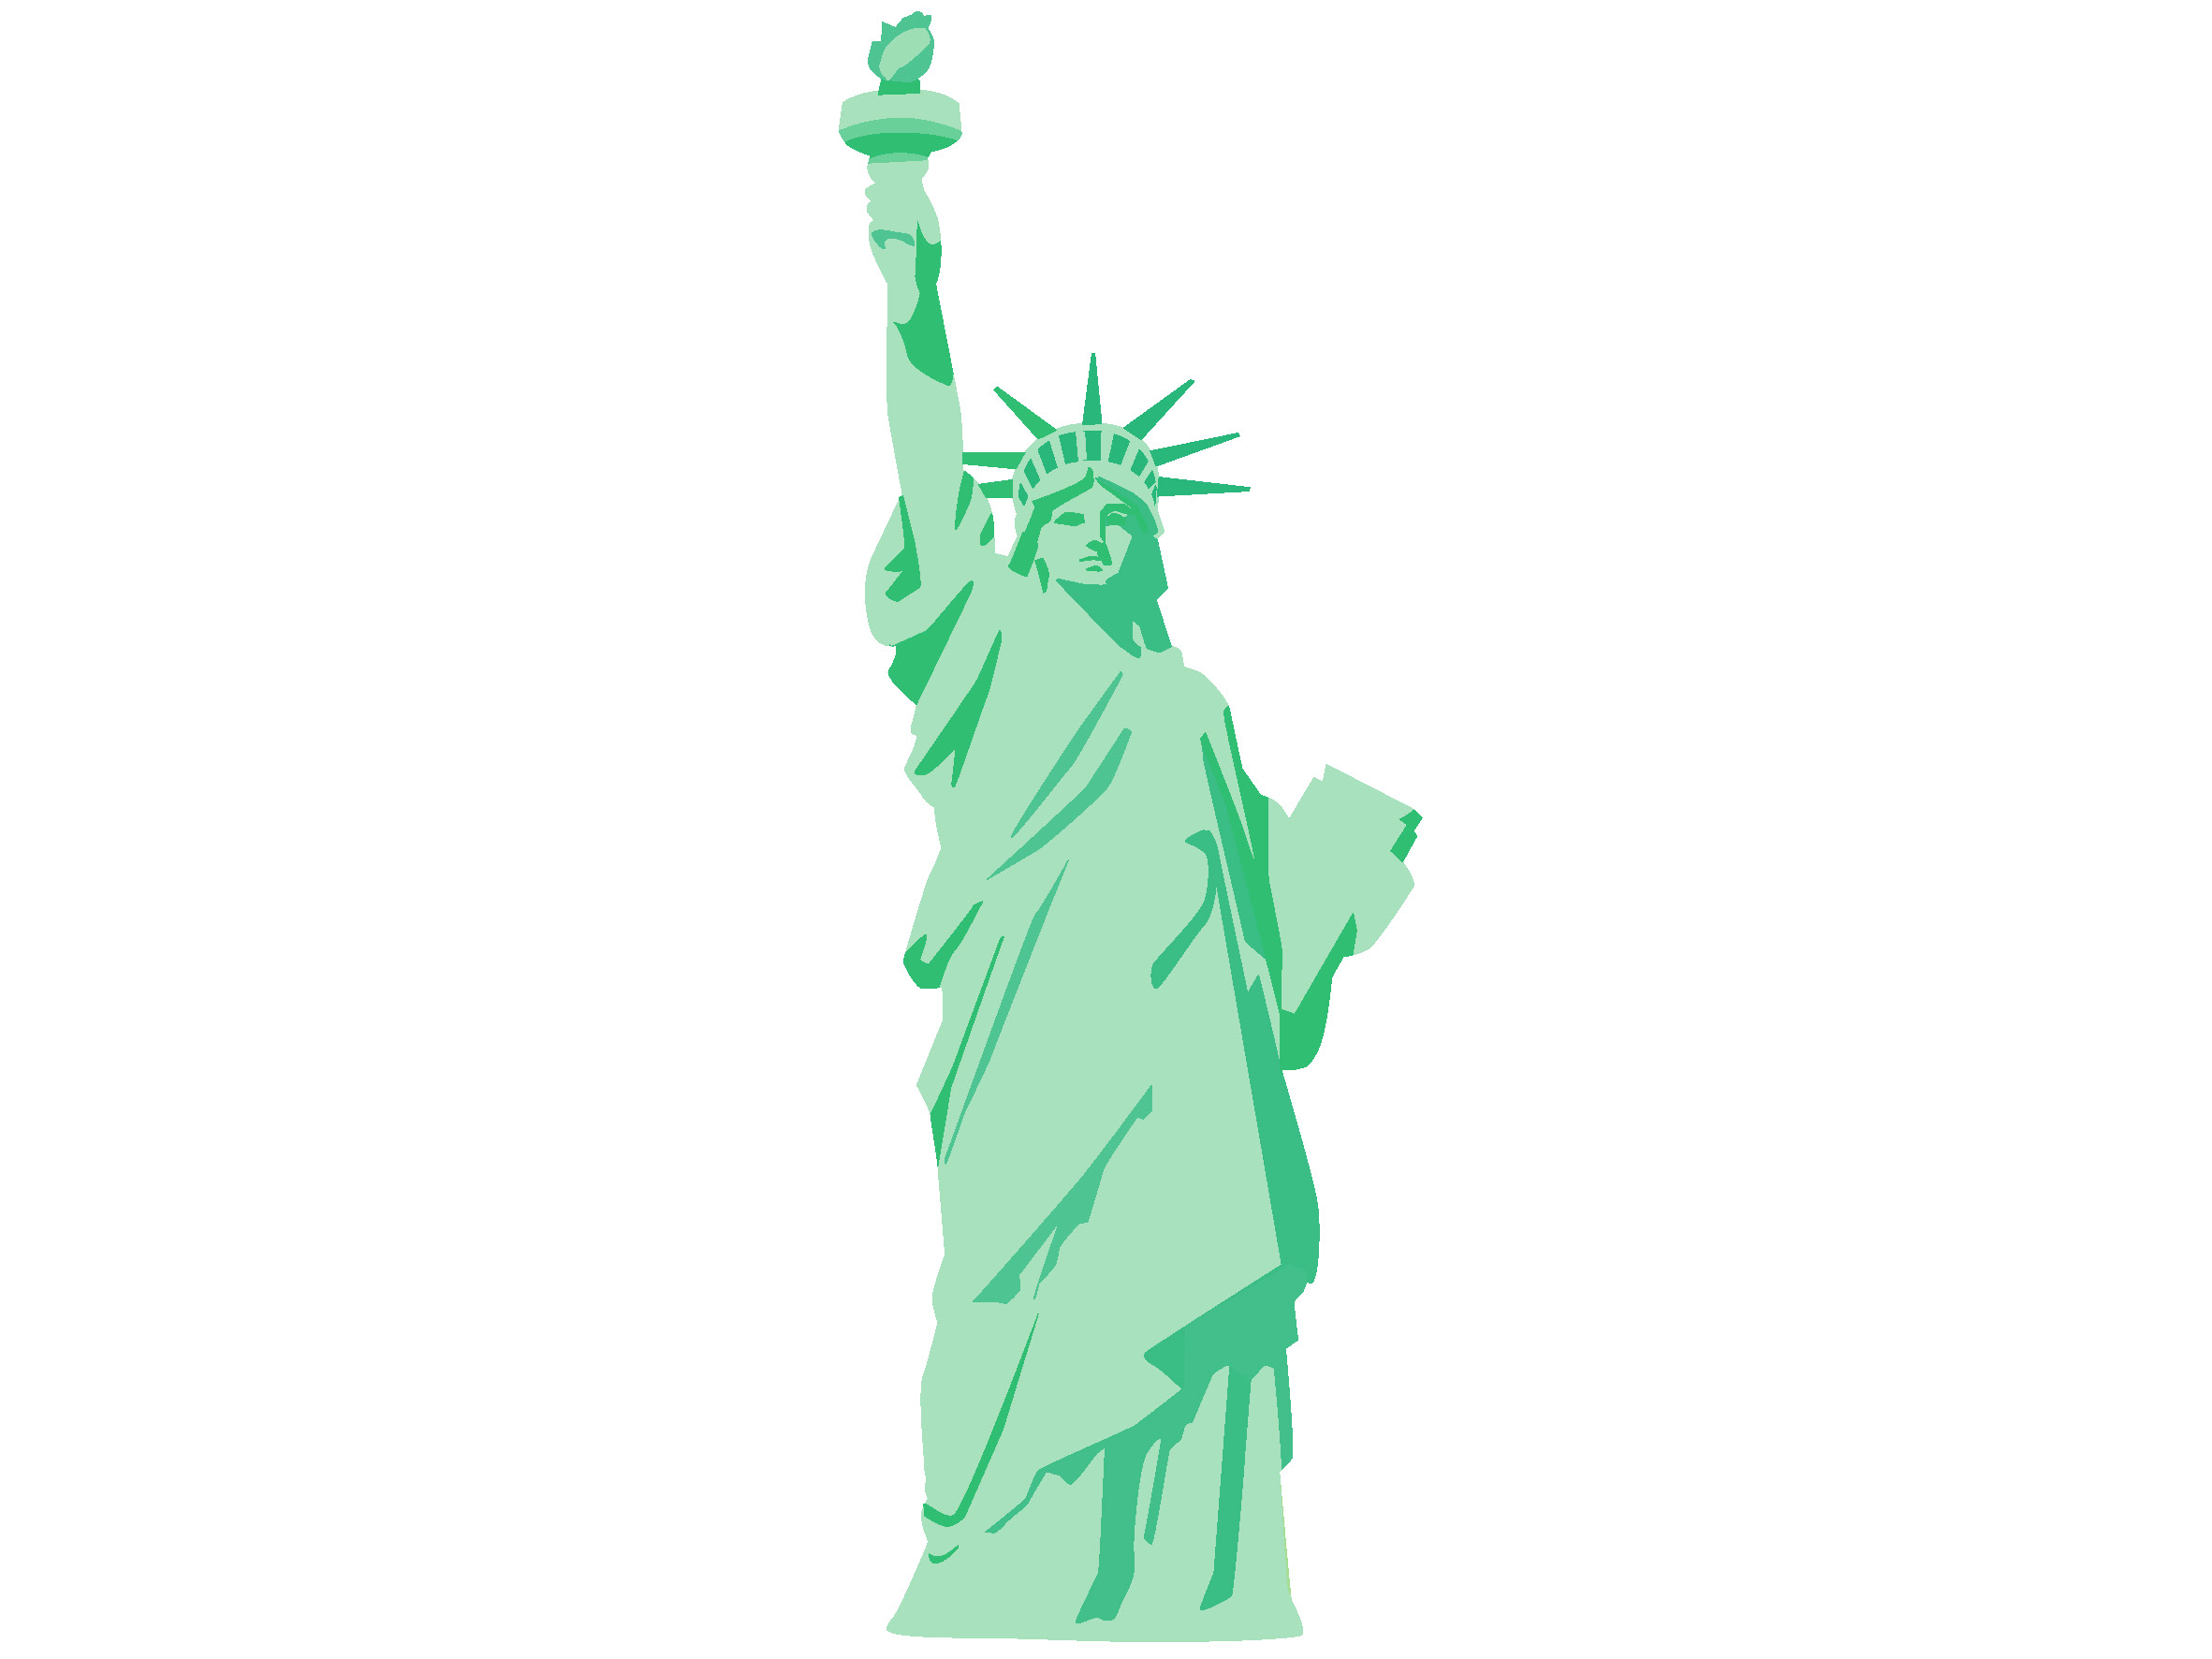 自由の女神像がニューヨー クへ届いた日